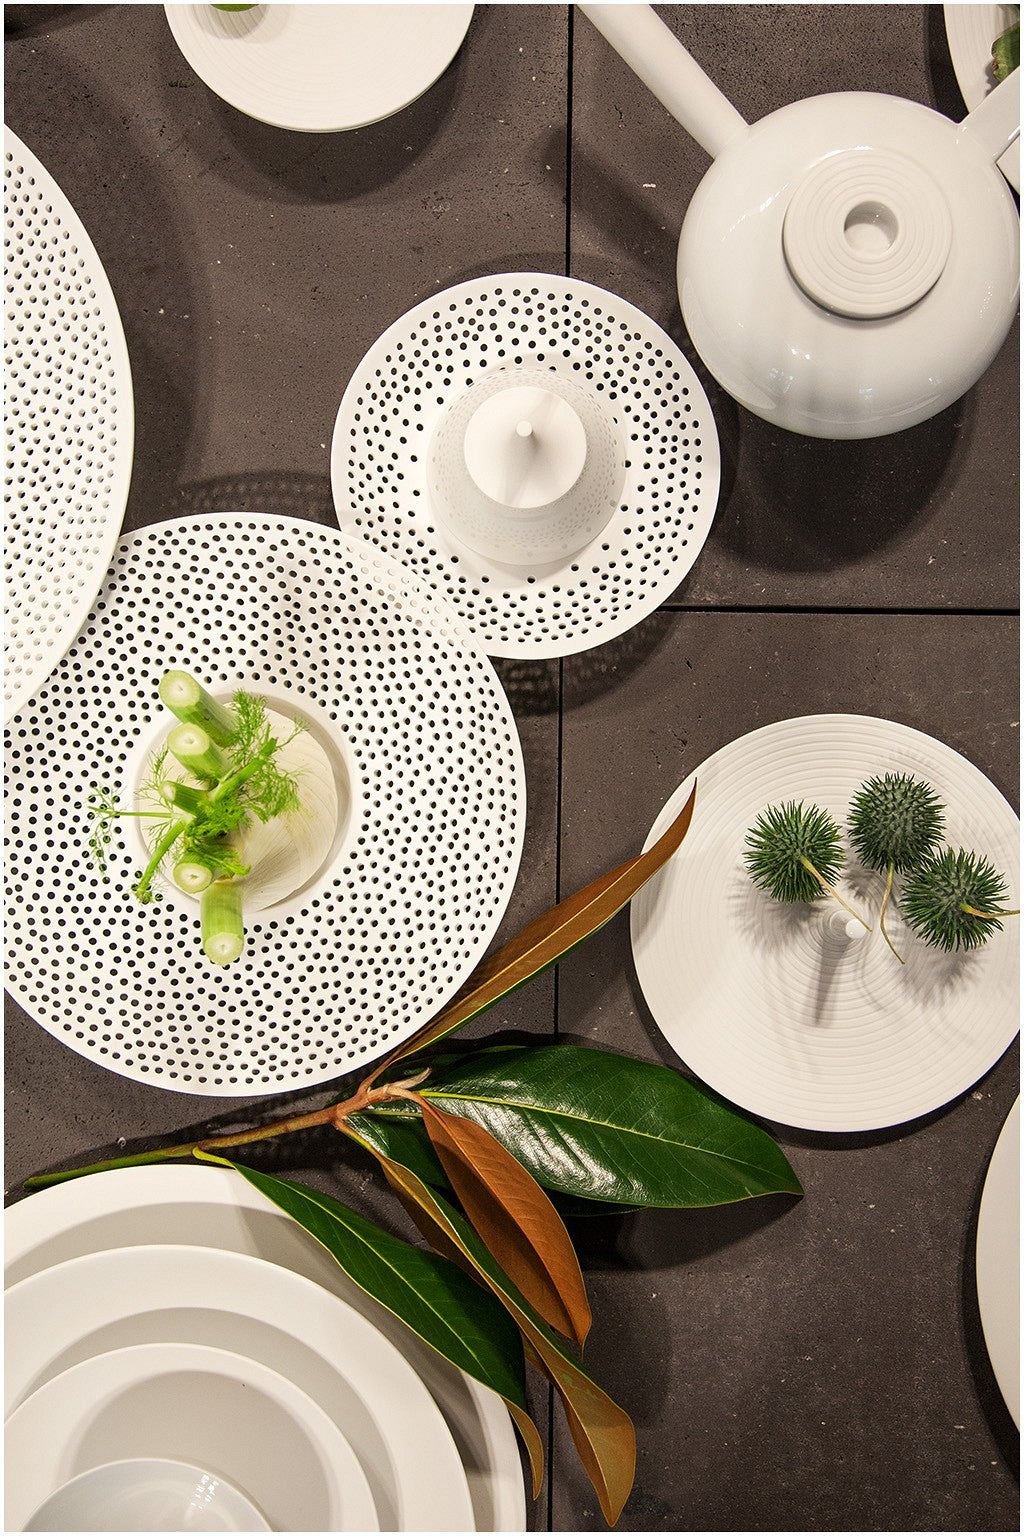 Eine stilvolle Tischdekoration mit einer Sammlung von weißem Geschirr mit schwarzen Tupfenmustern, ergänzt durch grüne Dekopflanzen und eine weiße Teekanne.